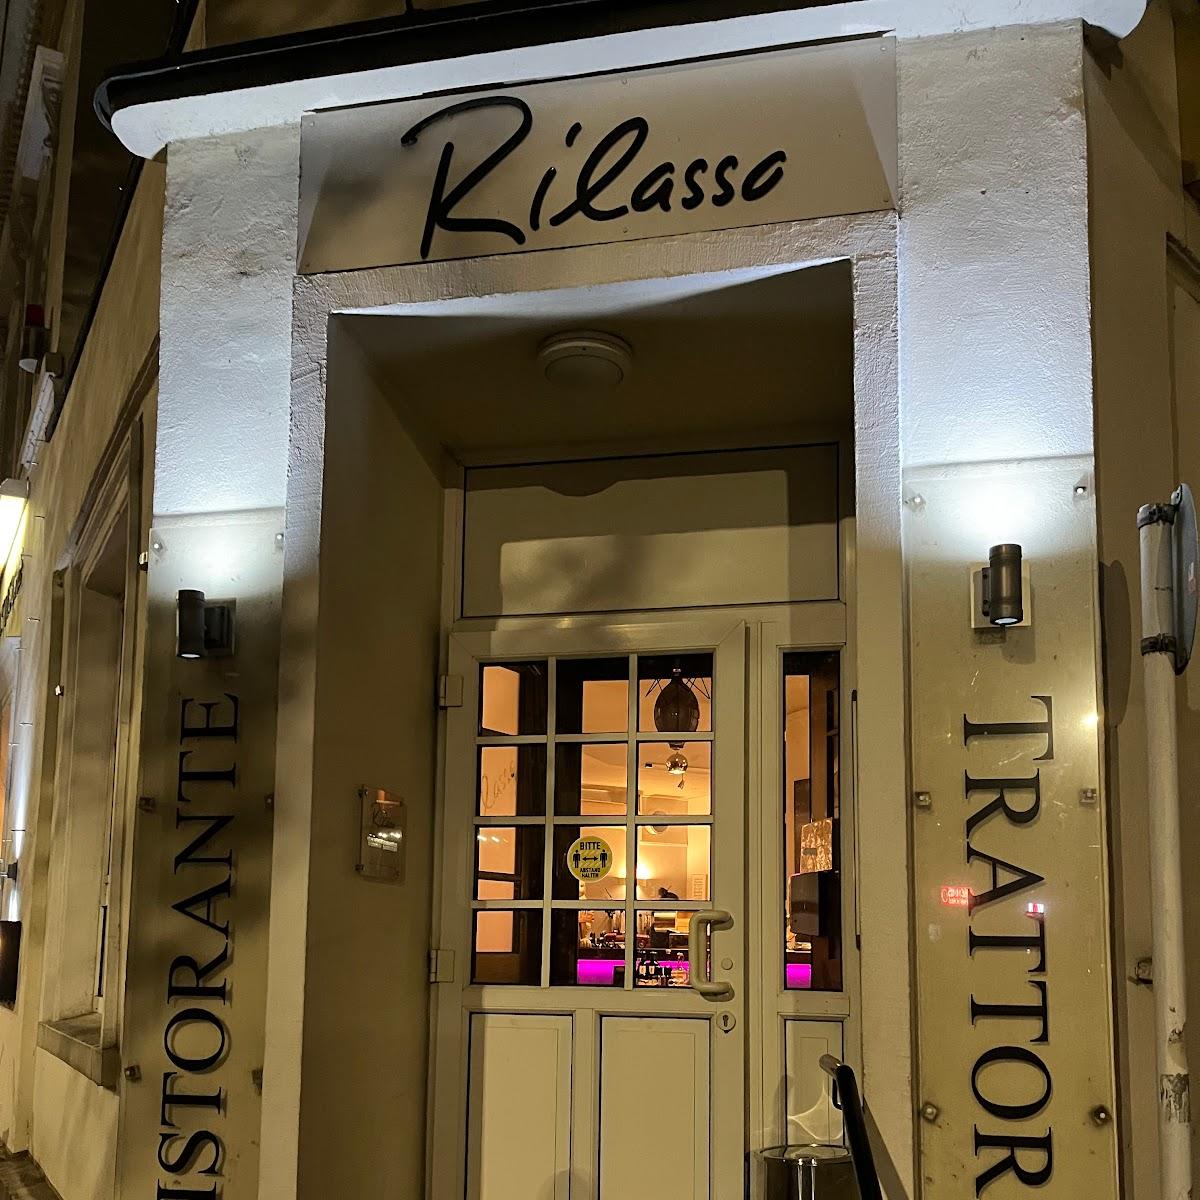 Restaurant "Rilasso Italienische Küche" in Dortmund